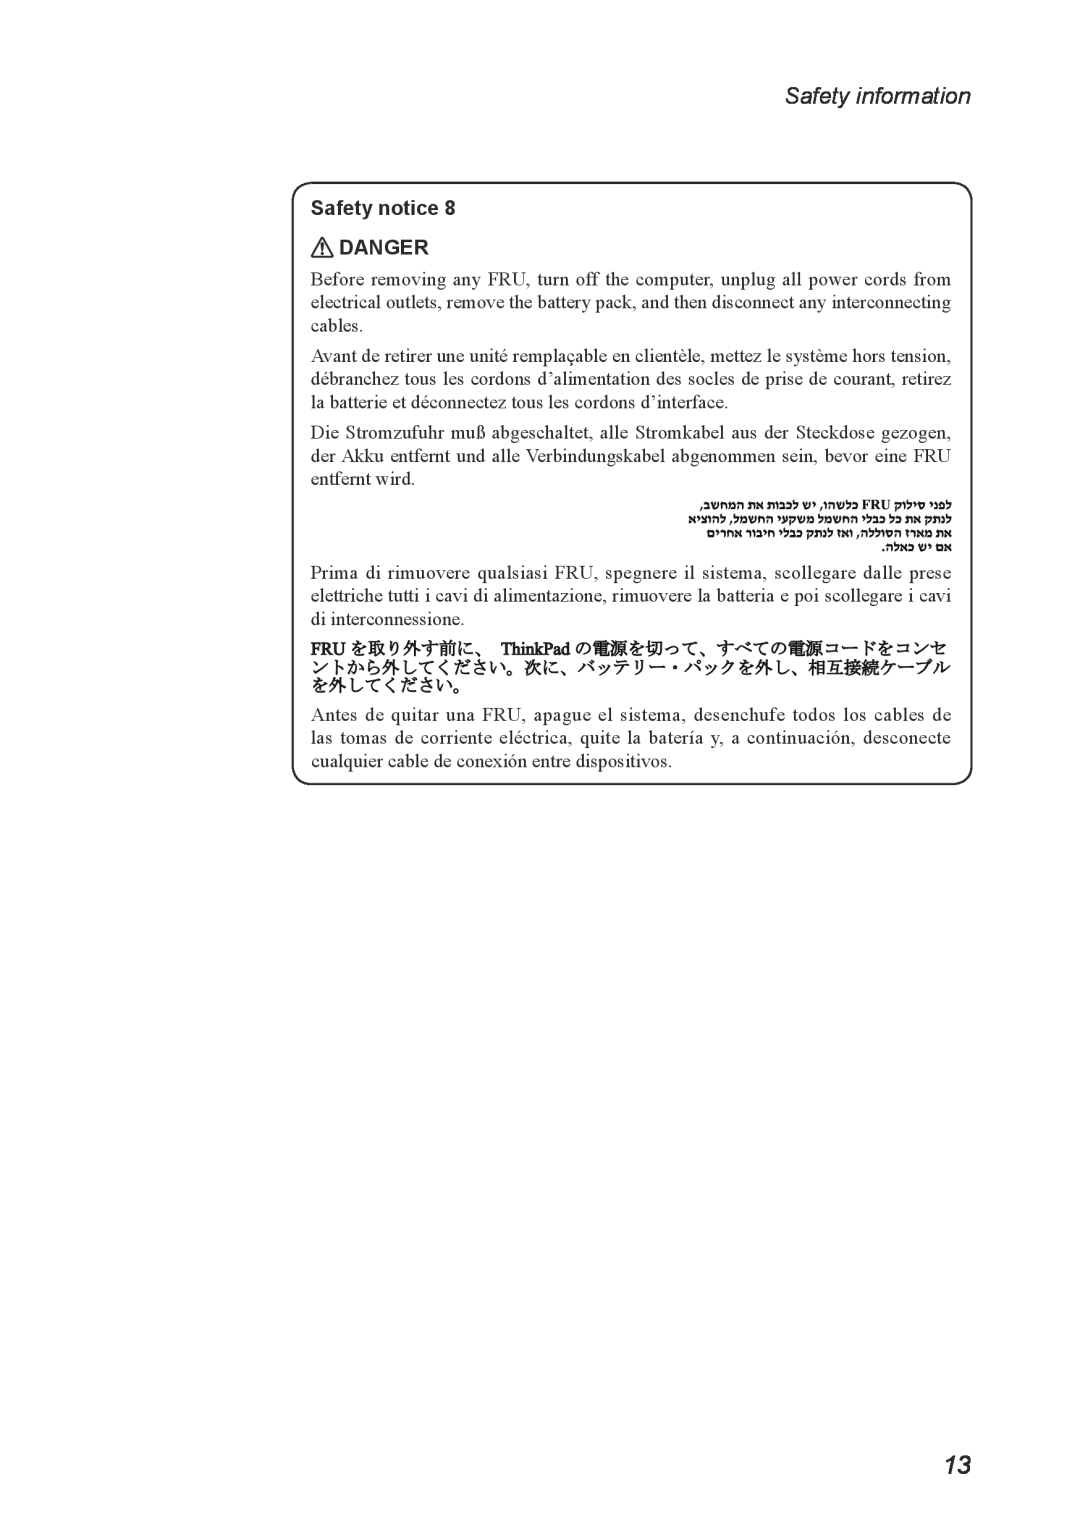 Lenovo U300S, U400 manual Safety information, Safety notice DANGER 